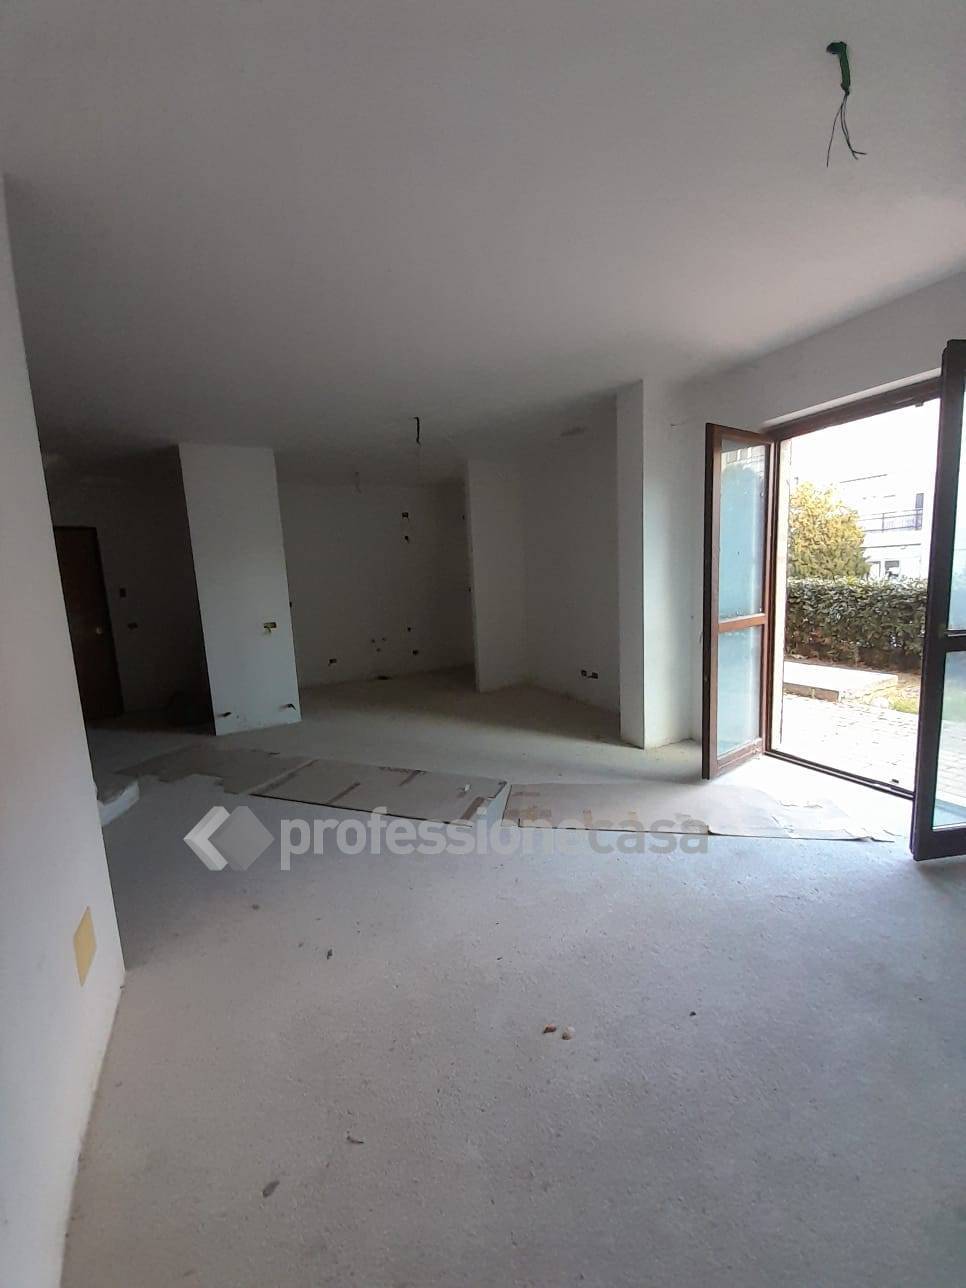 Appartamento in vendita a Monte Urano, 5 locali, zona Località: Centro, prezzo € 150.000 | PortaleAgenzieImmobiliari.it